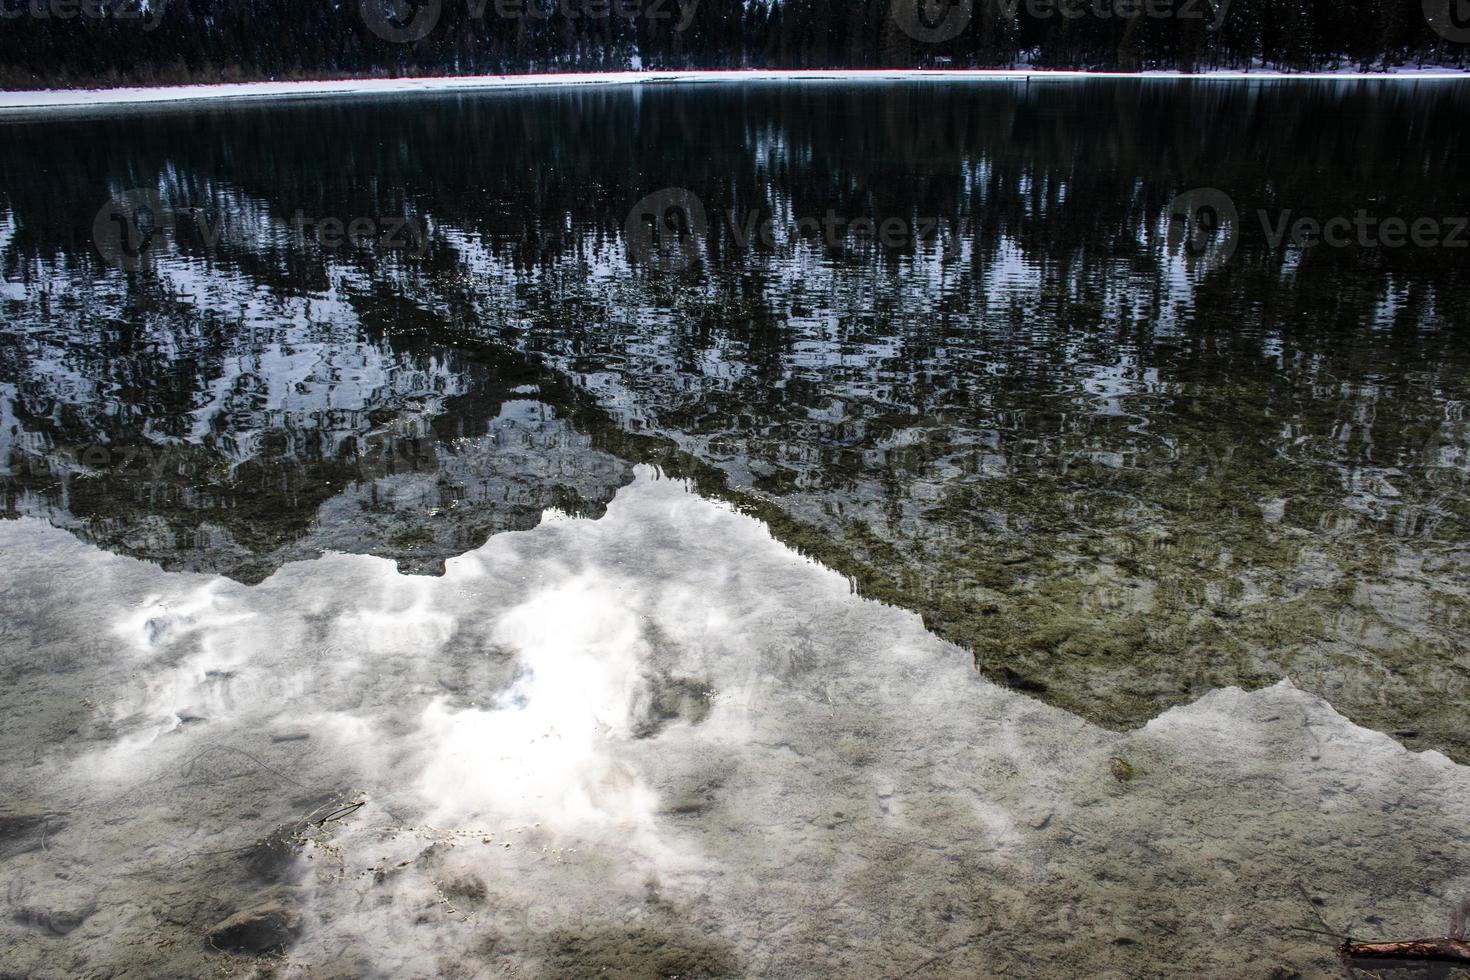 Die Dolomiten spiegeln sich im Dobbiaco-See wider foto